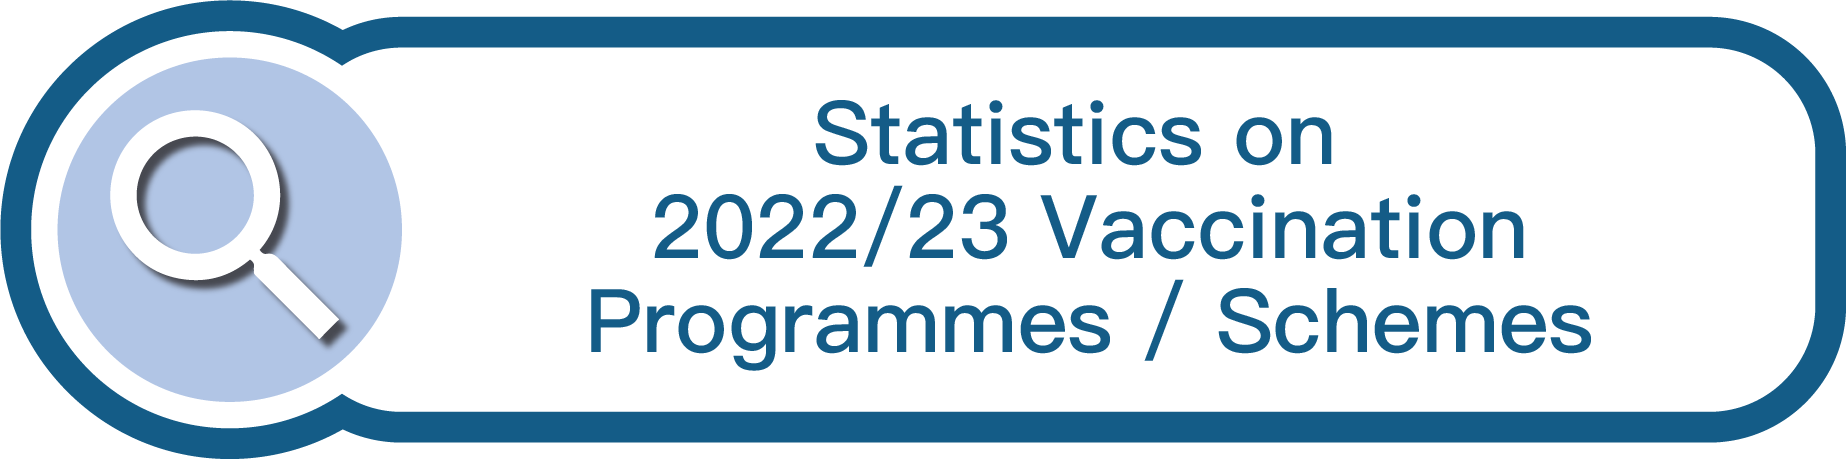 Statistics on 2022/23 Vaccination Programmes/Schemes